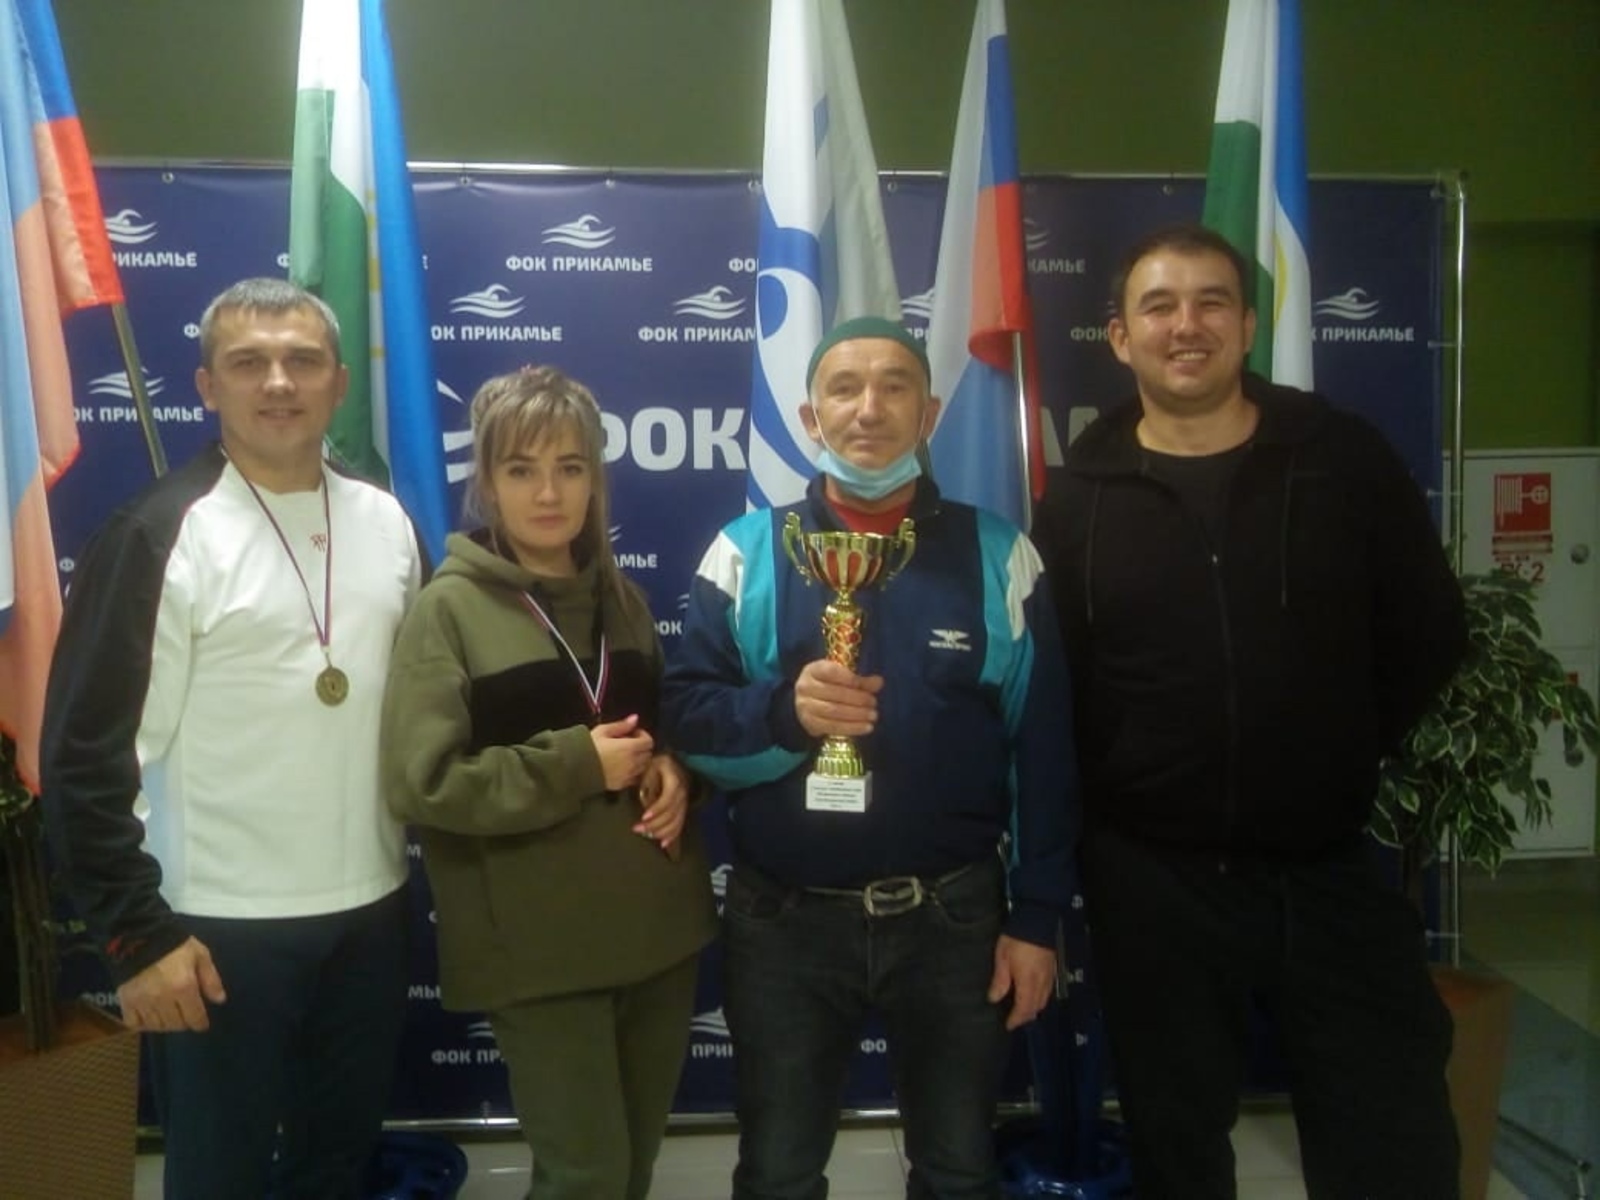 Команда Уфимского района стала серебряным призером XXIX сельских игр РБ по настольному теннису